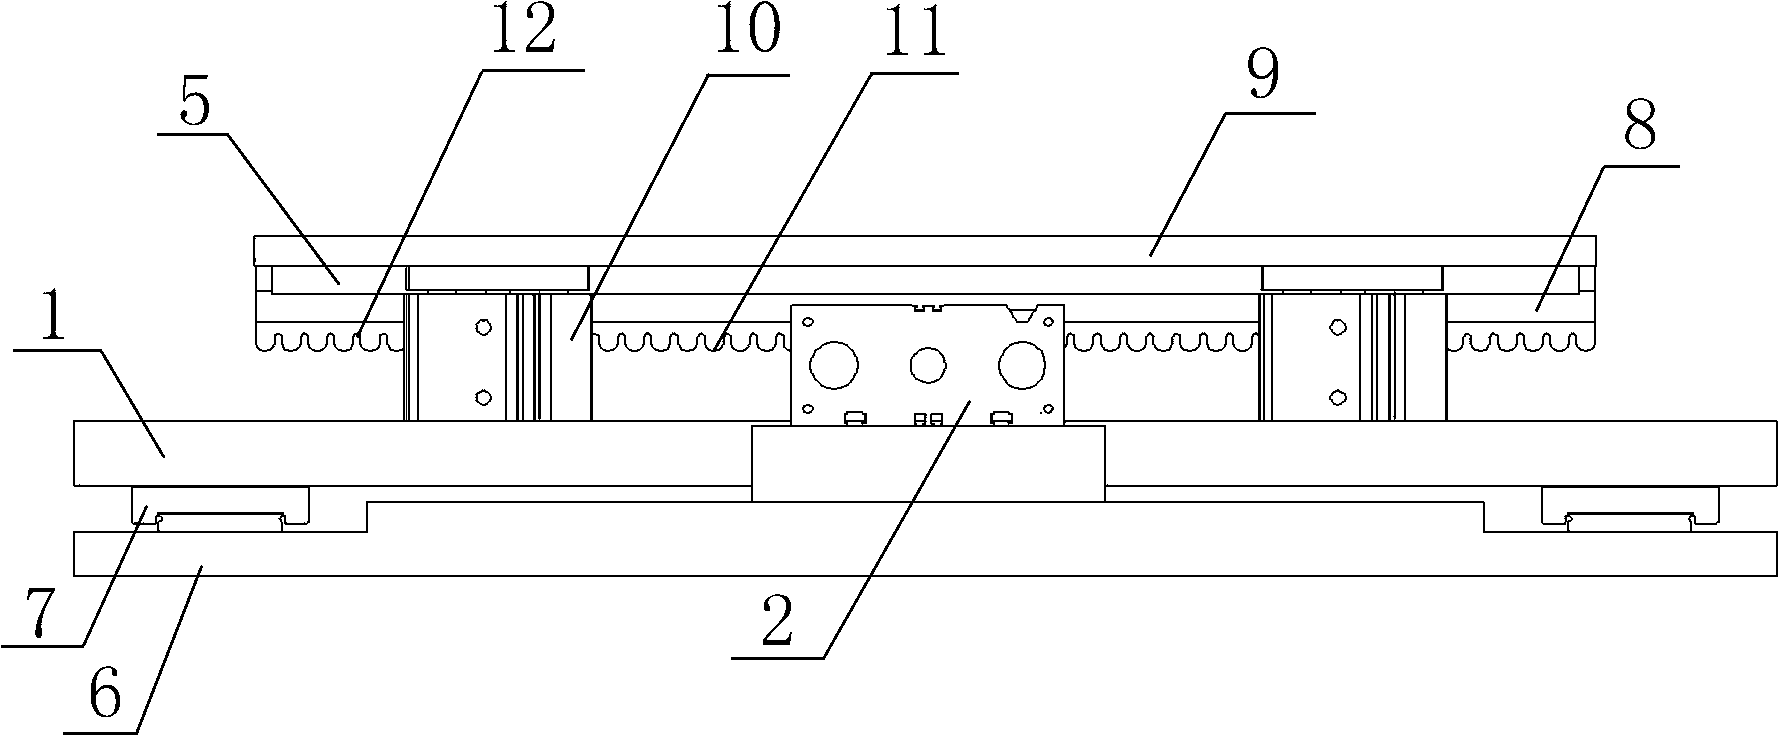 Condulet external-gluing mechanism